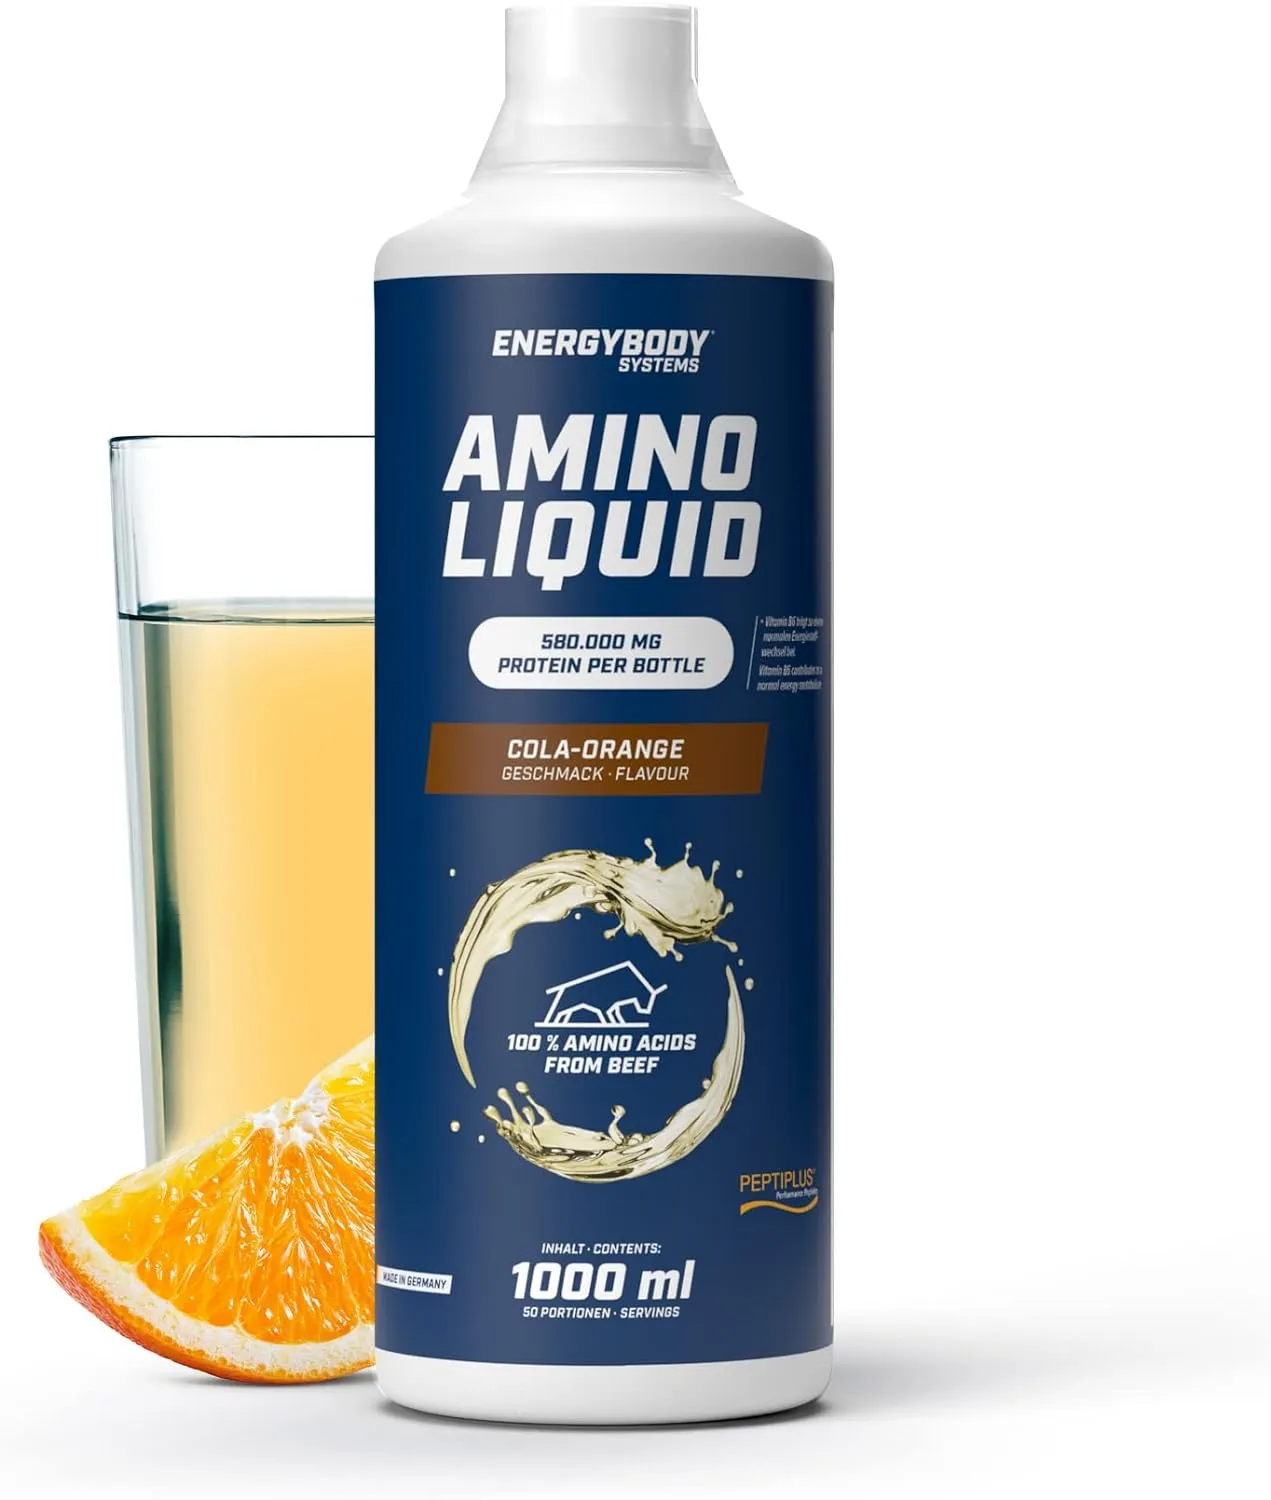 Amino Liquid 580.000 mg